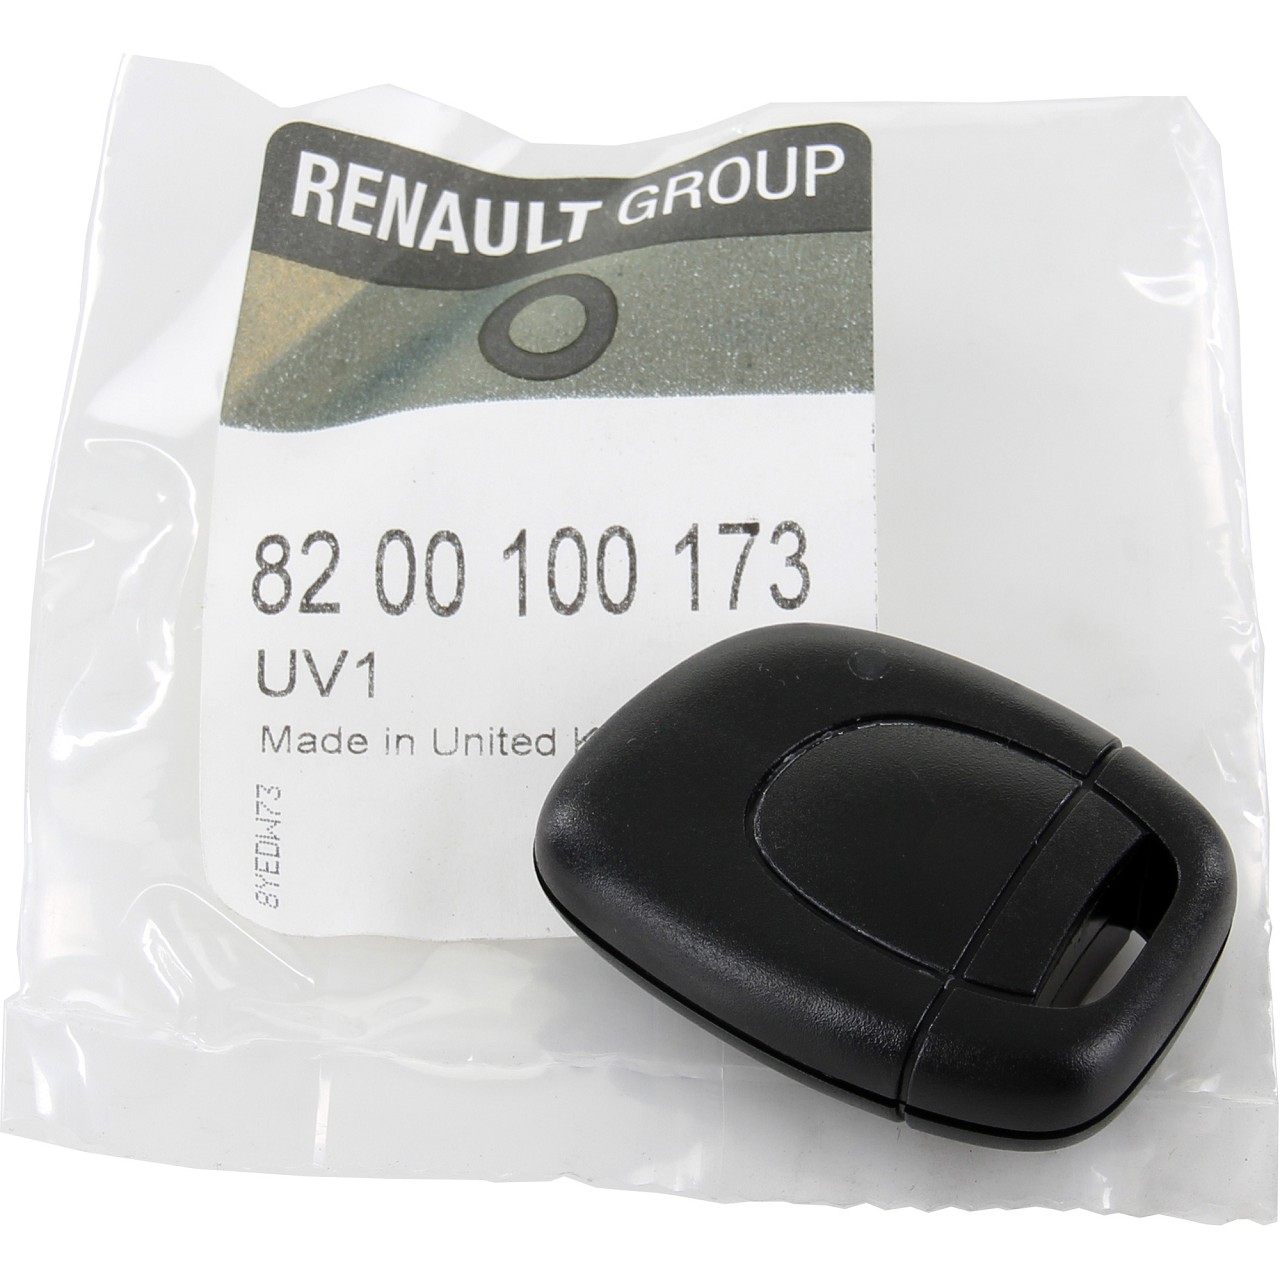 ORIGINAL Renault Sender Funkfernbedienung Fernbedienung CLIO II 8200100173